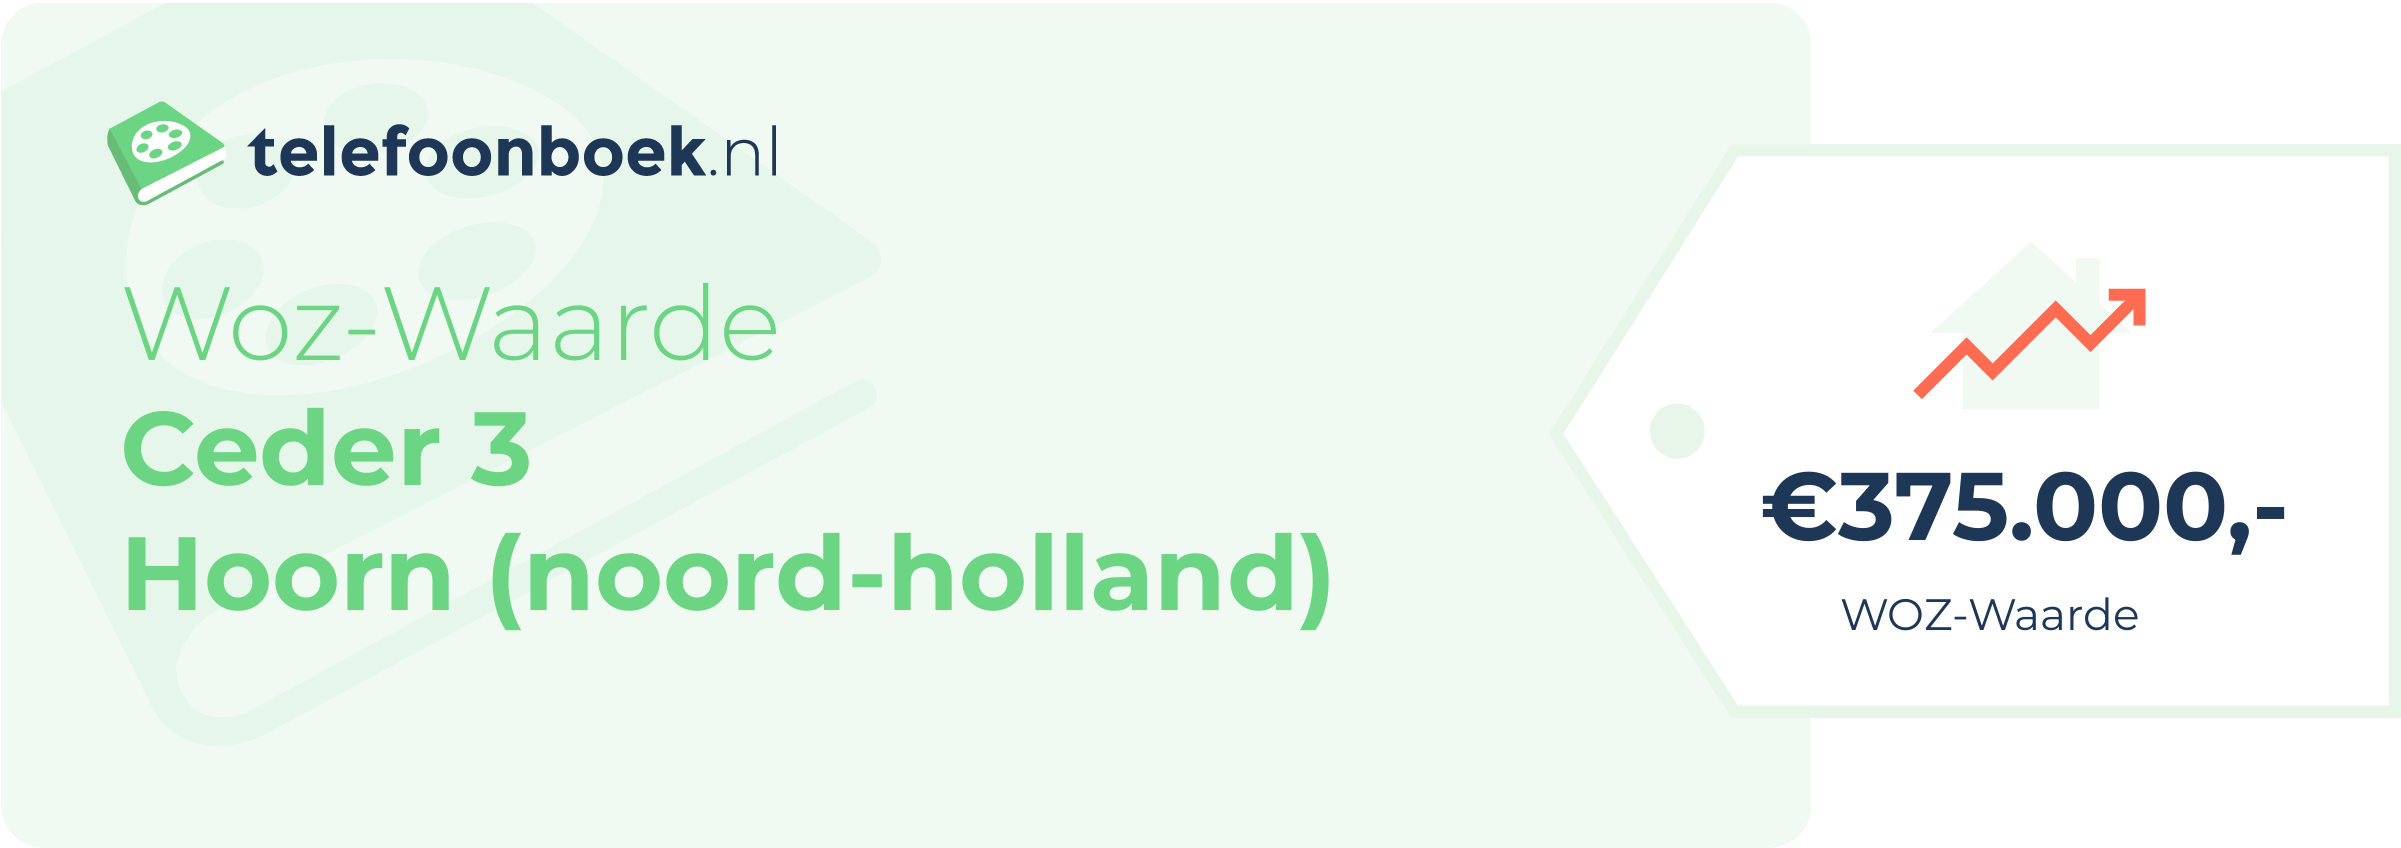 WOZ-waarde Ceder 3 Hoorn (Noord-Holland)